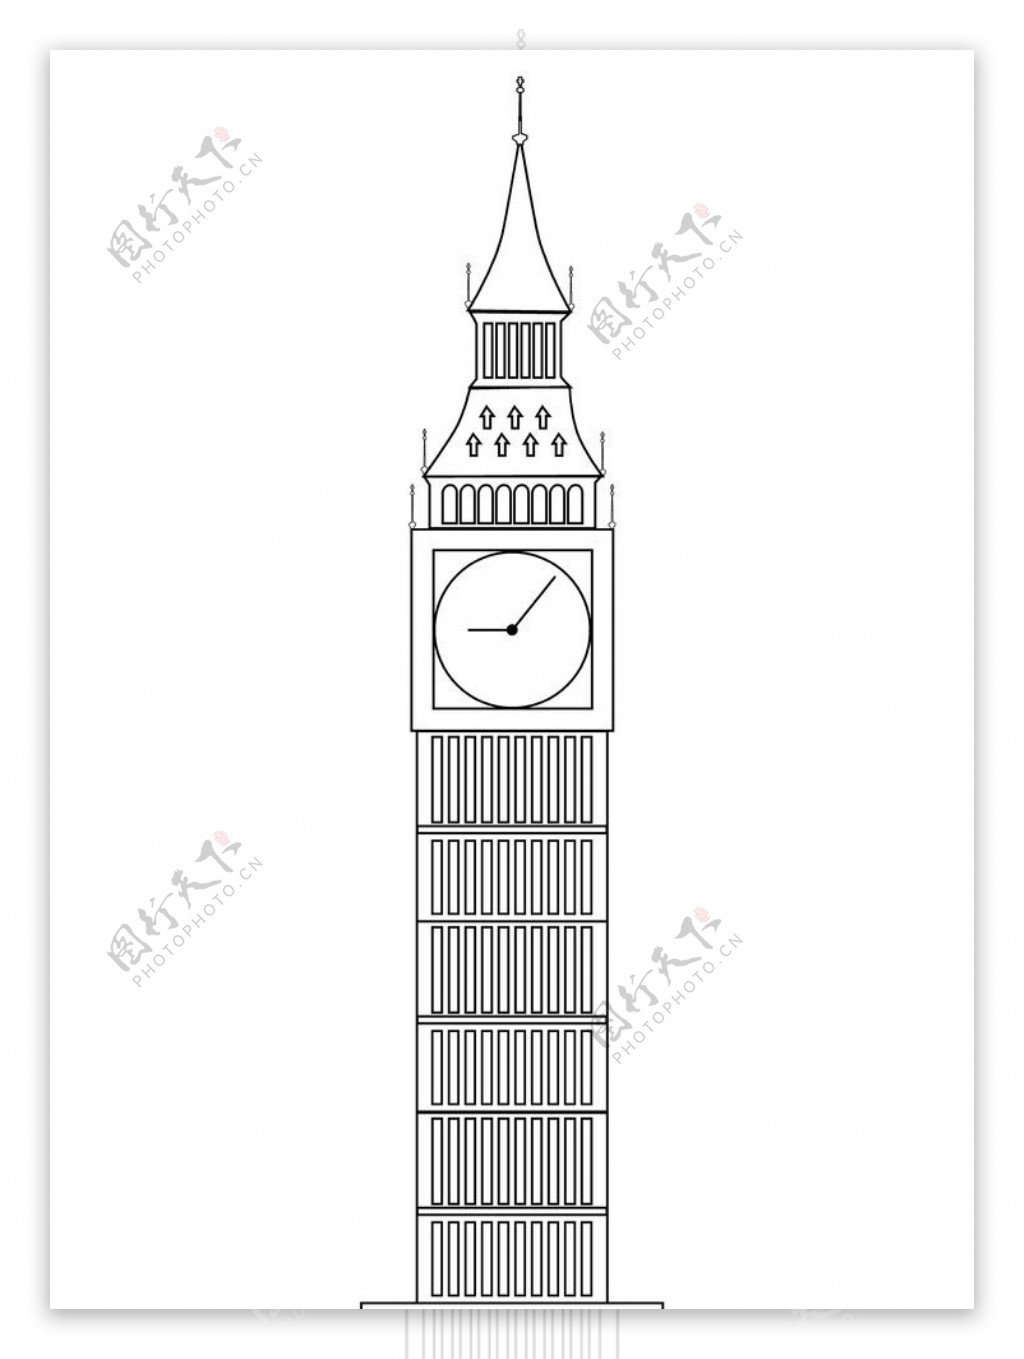 伦敦大本钟正面矢量图片